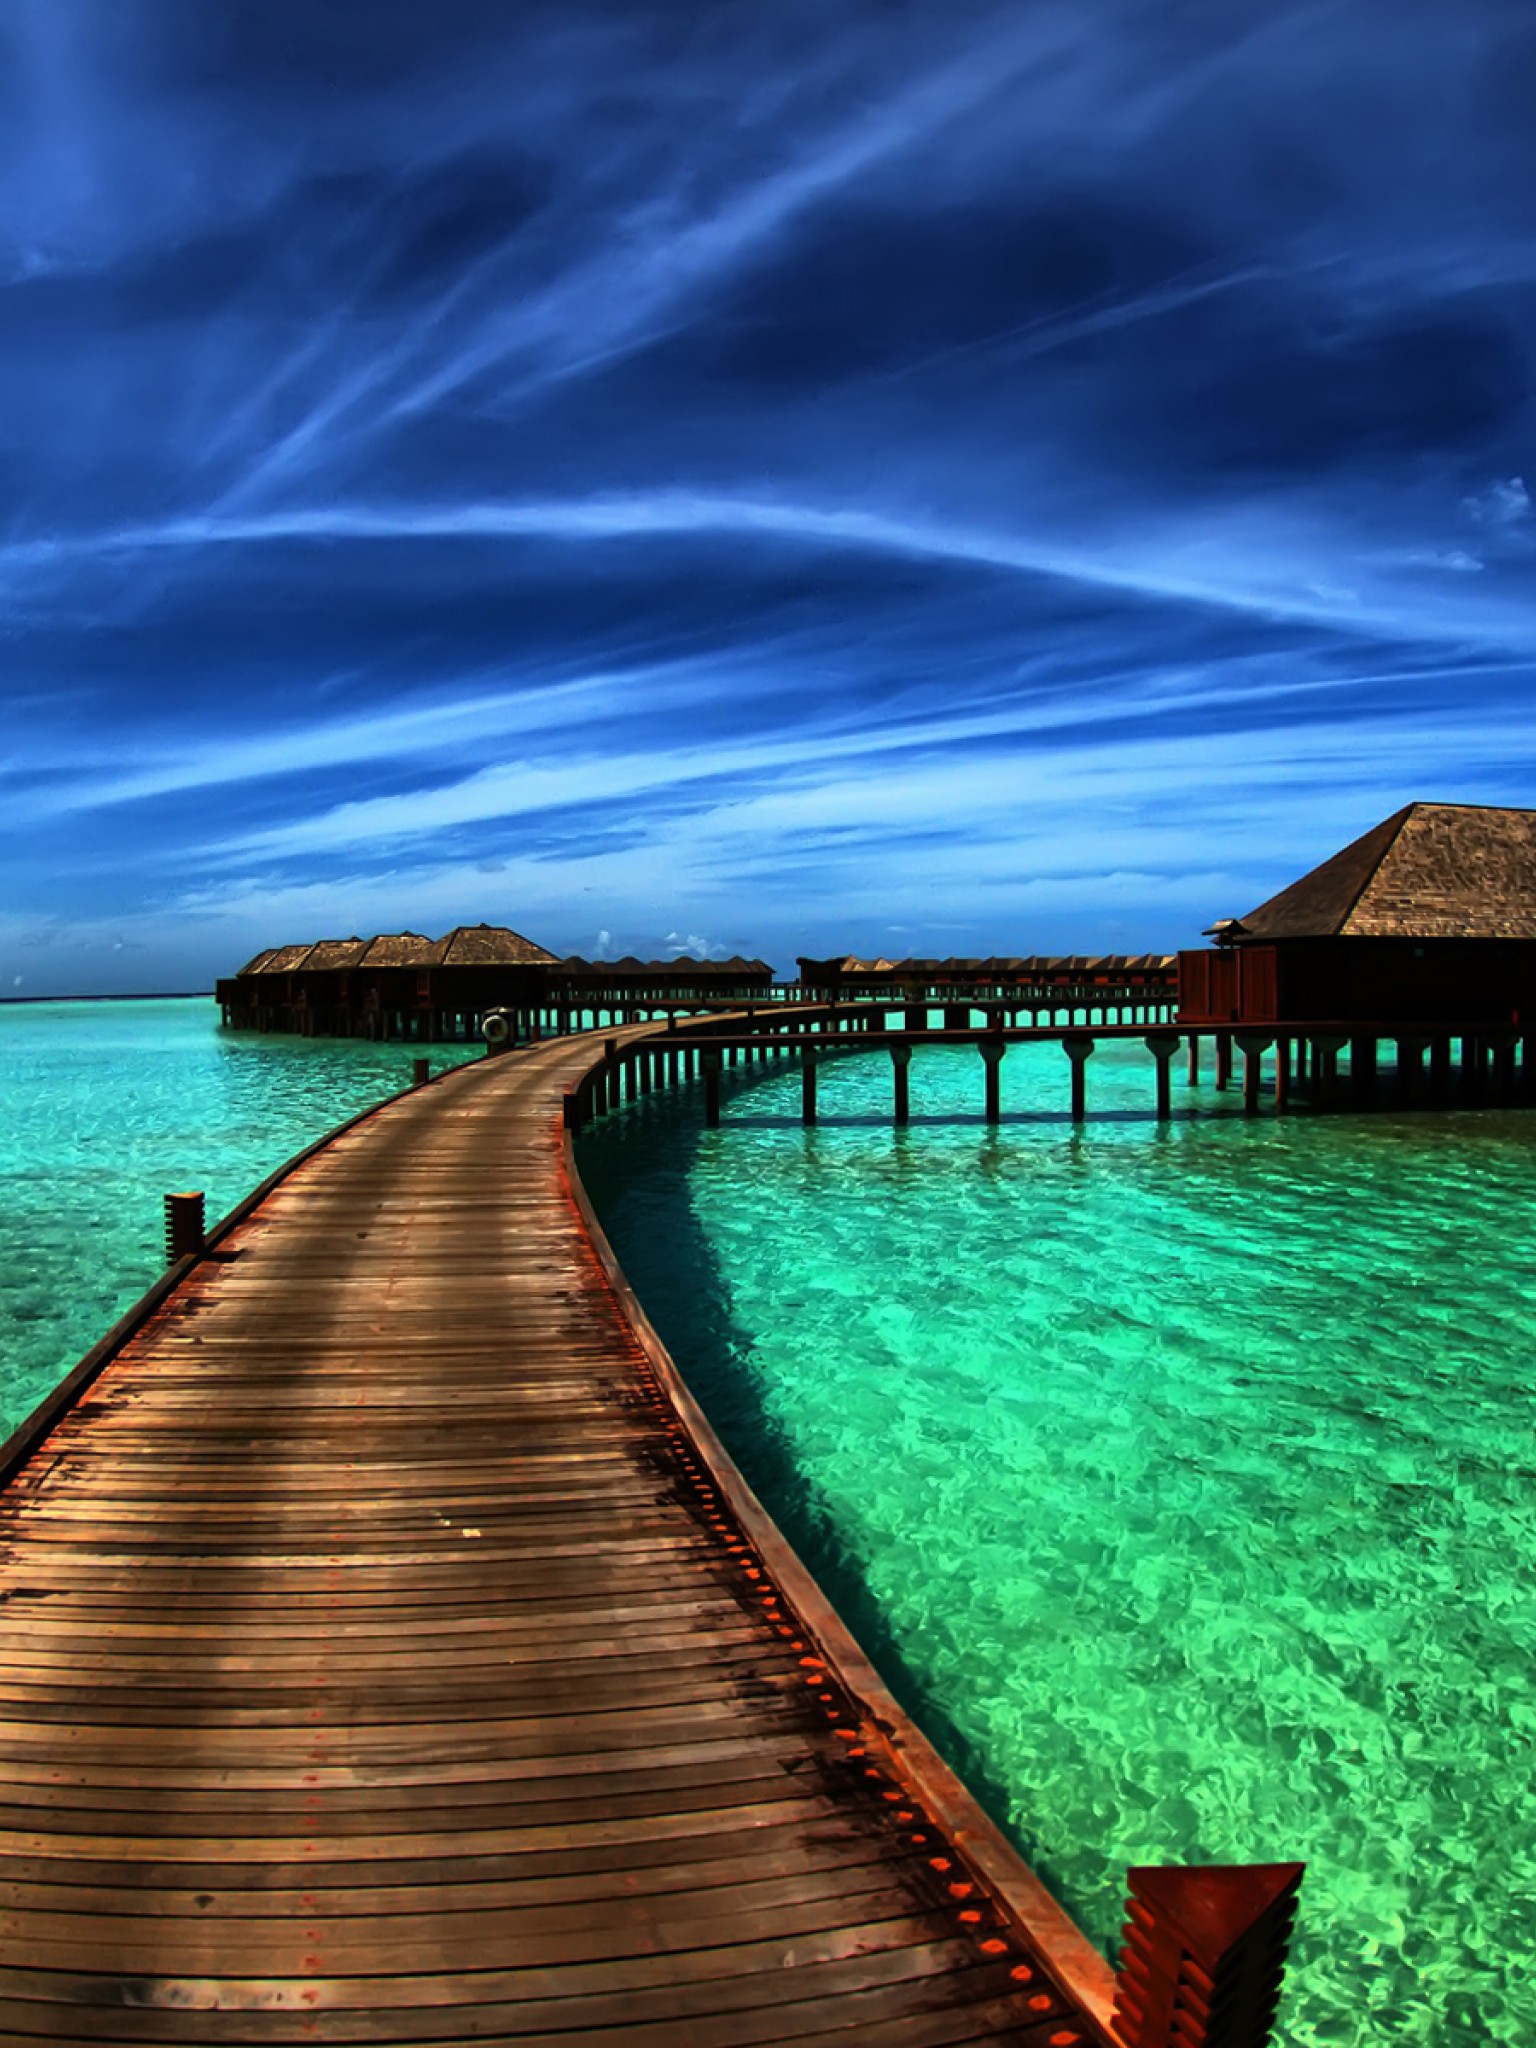 Красивые картинки на заставку экрана телефона. Красивый фон на телефон. Фон красивые места. Мальдивы природа. Море красивые места.